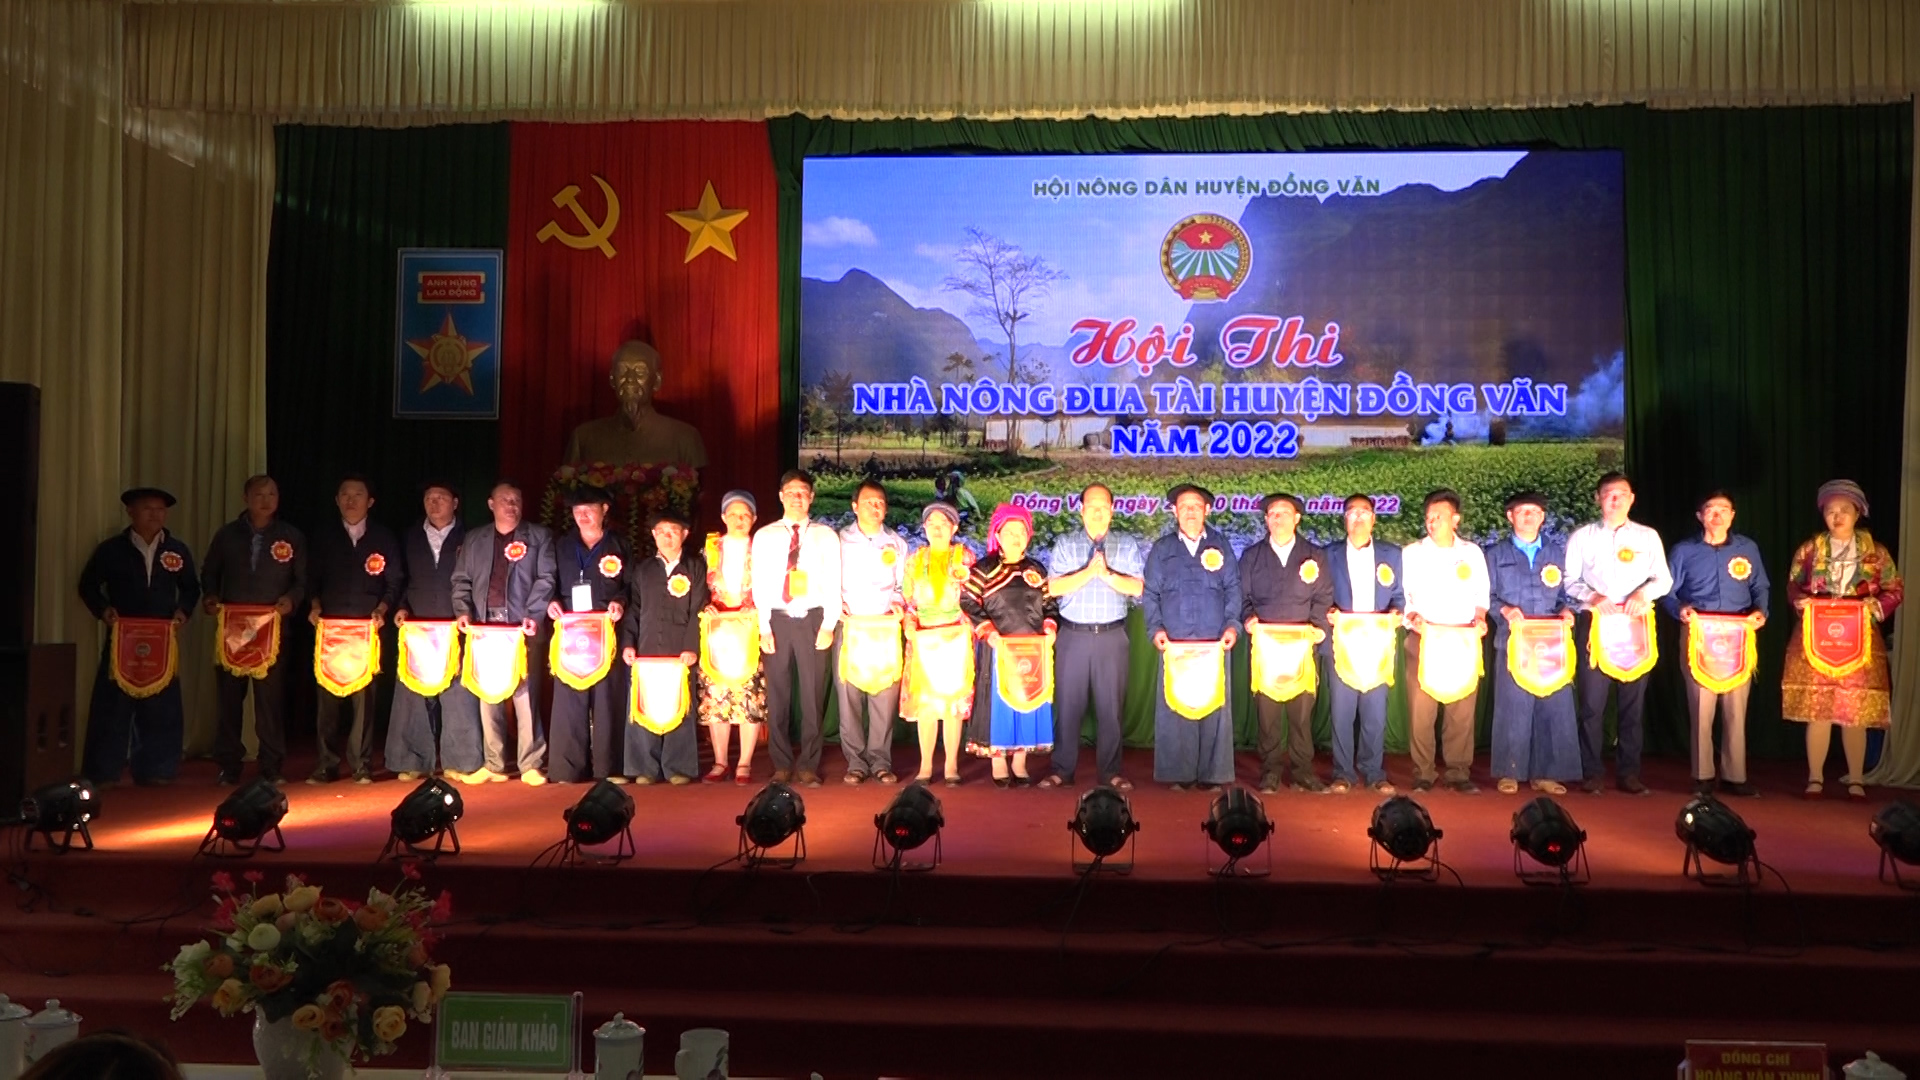 Đồng Văn khai mạc hội thi Nhà nông đua tài năm 2022